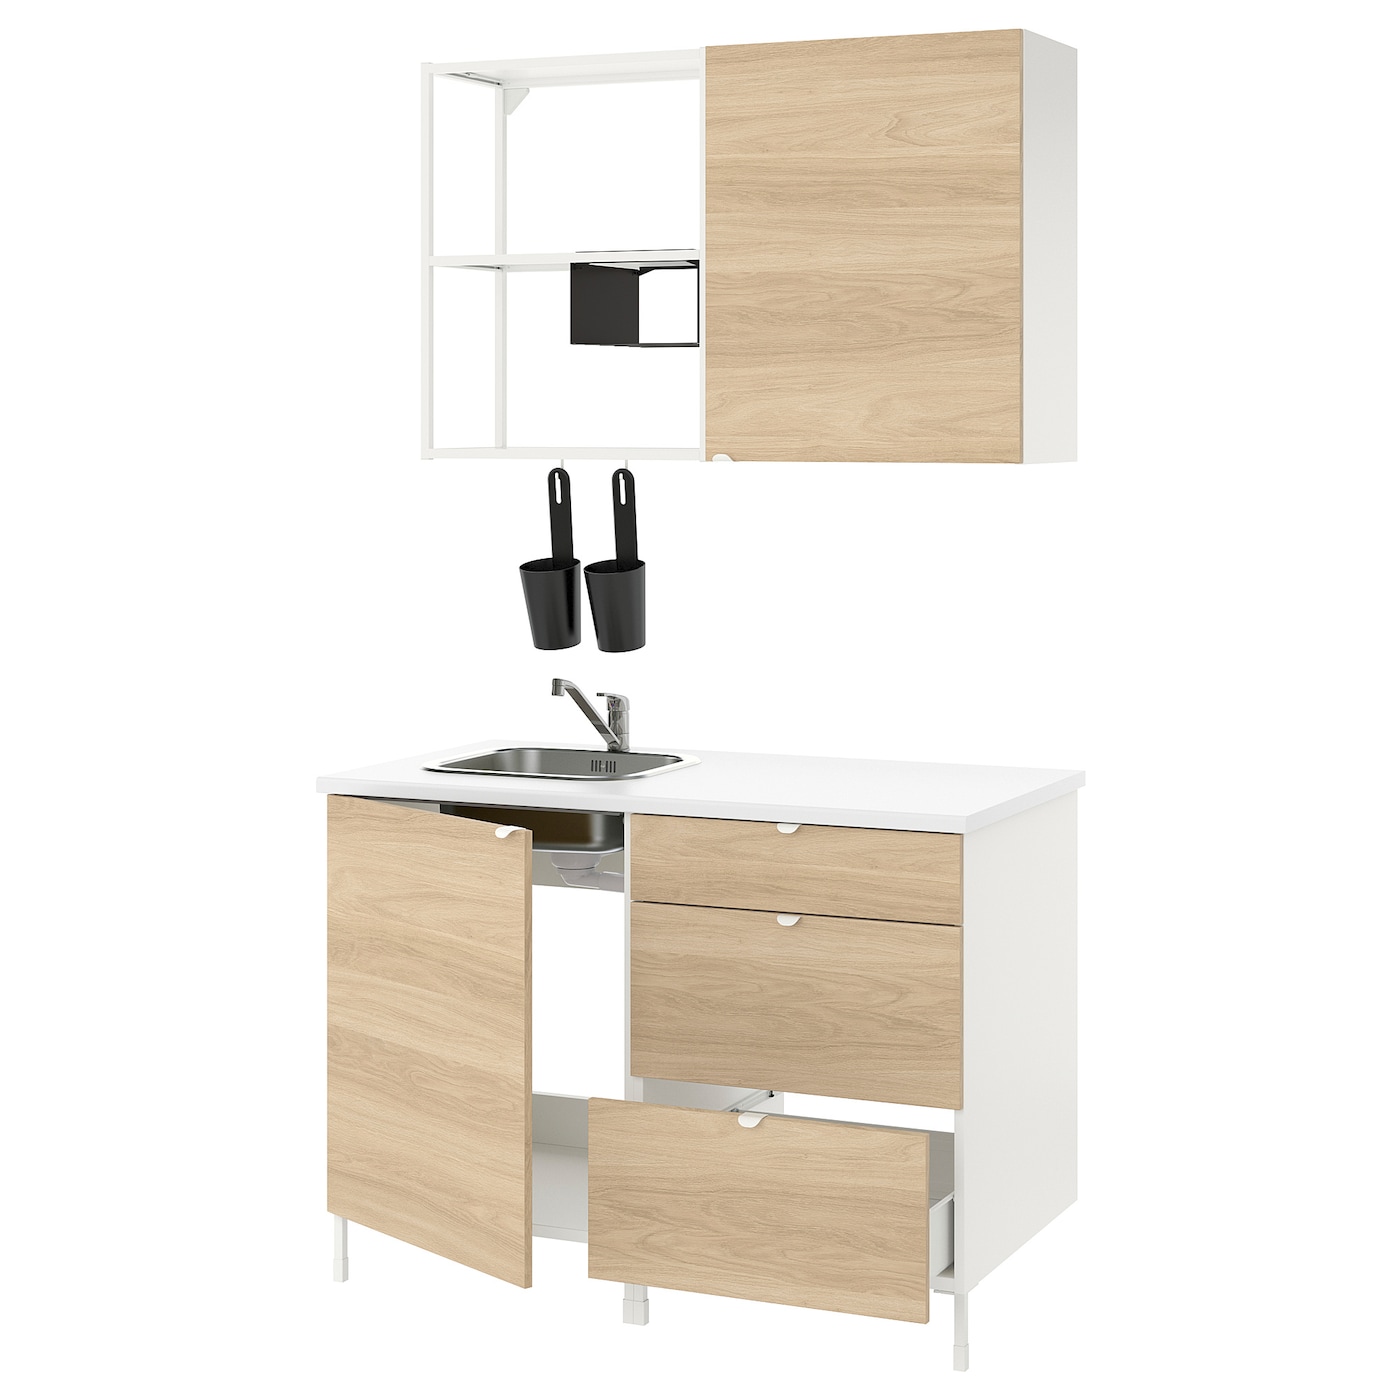 Кухонная комбинация для хранения вещей  - ENHET  IKEA/ ЭНХЕТ ИКЕА, 123x63,5x222 см, белый/бежевый